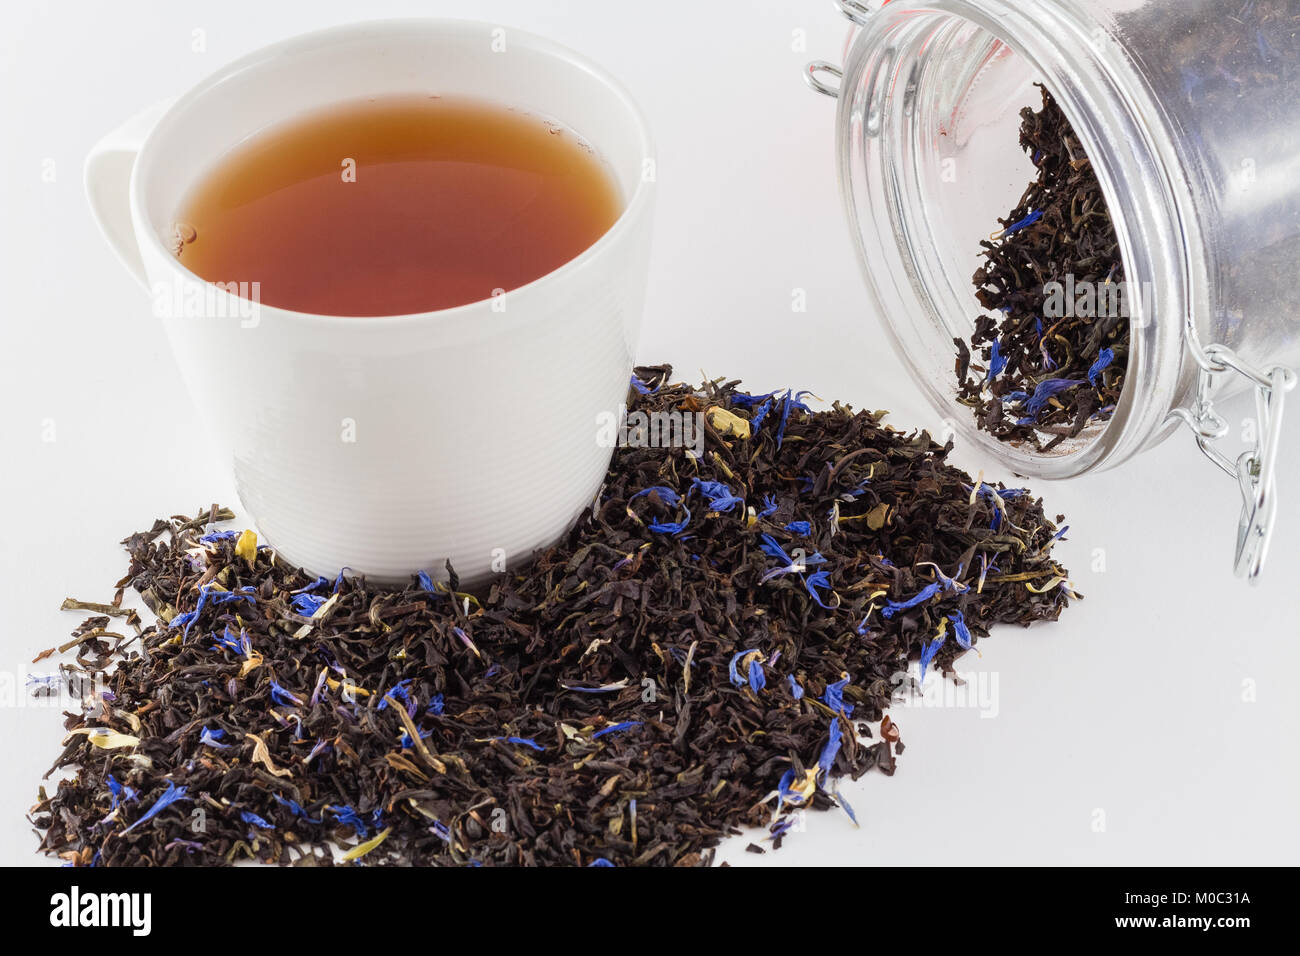 Tazza di tè con un fresco e le foglie di tè e tè vaso con le foglie di tè isolati su sfondo bianco Foto Stock